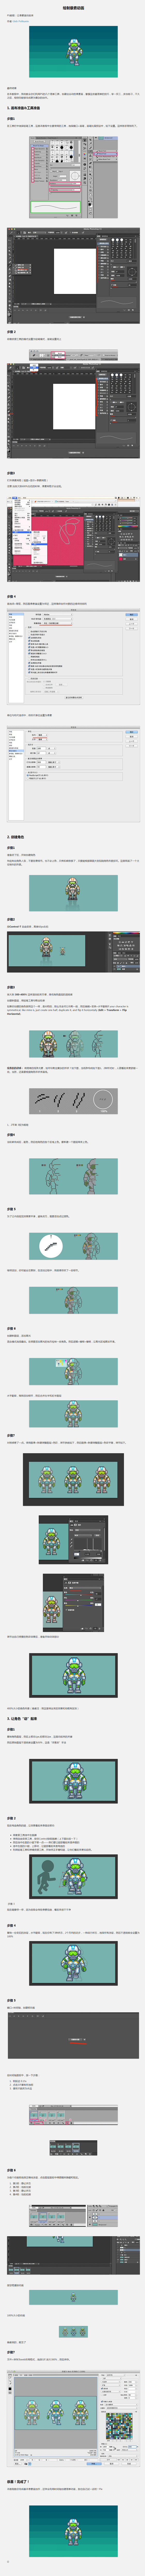 绘制像素动画-UI中国-专业界面设计平台